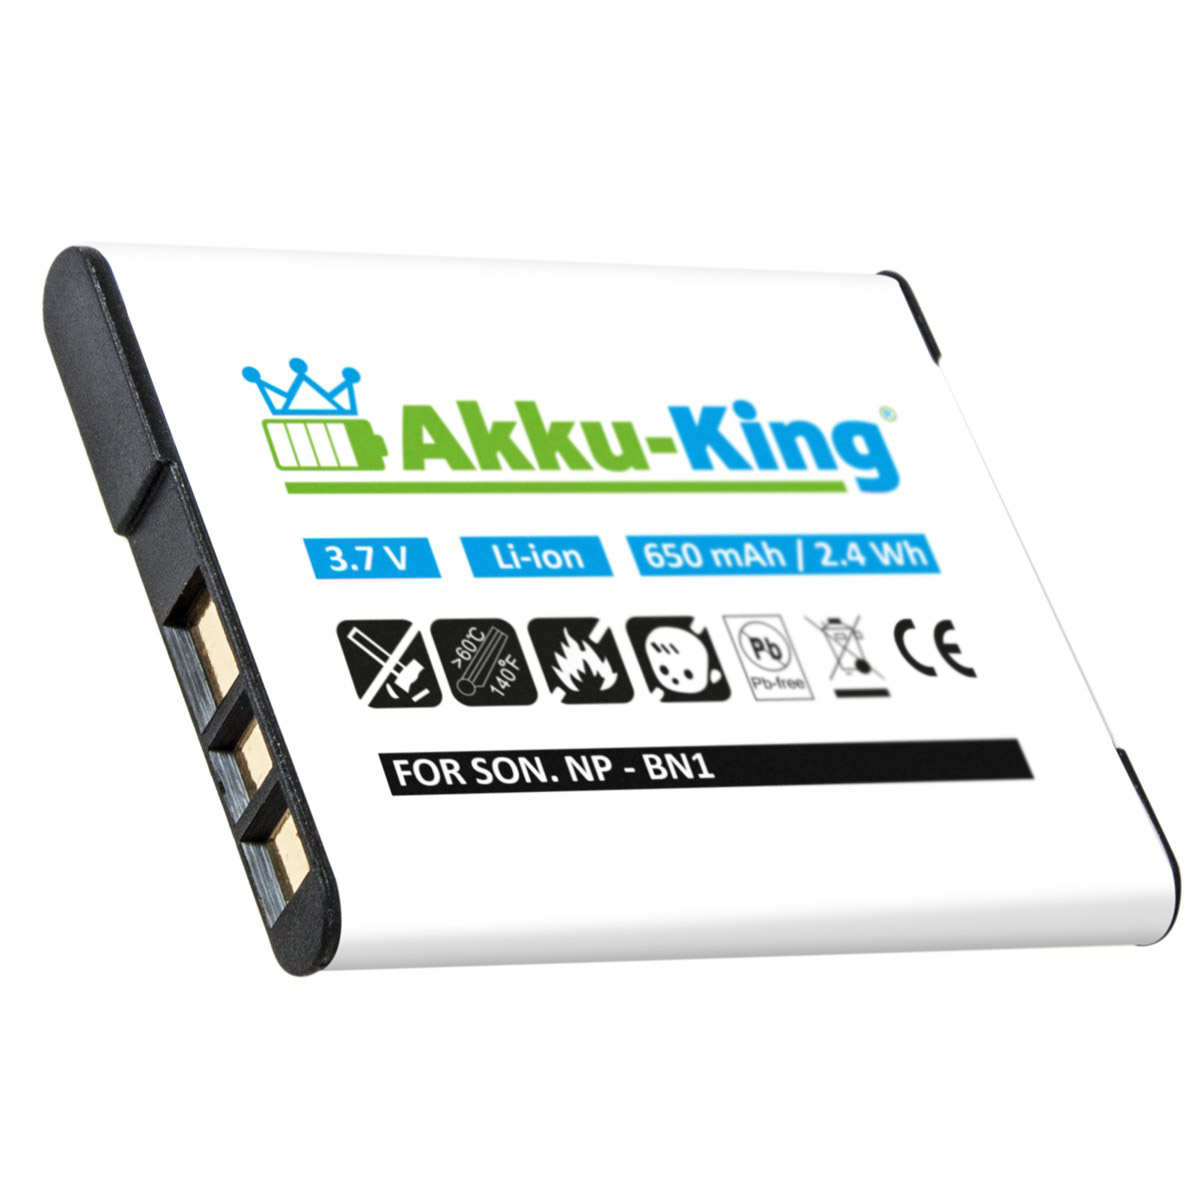 3.7 Akku 650mAh Li-Ion kompatibel Sony Kamera-Akku, AKKU-KING Volt, NP-BN1 mit